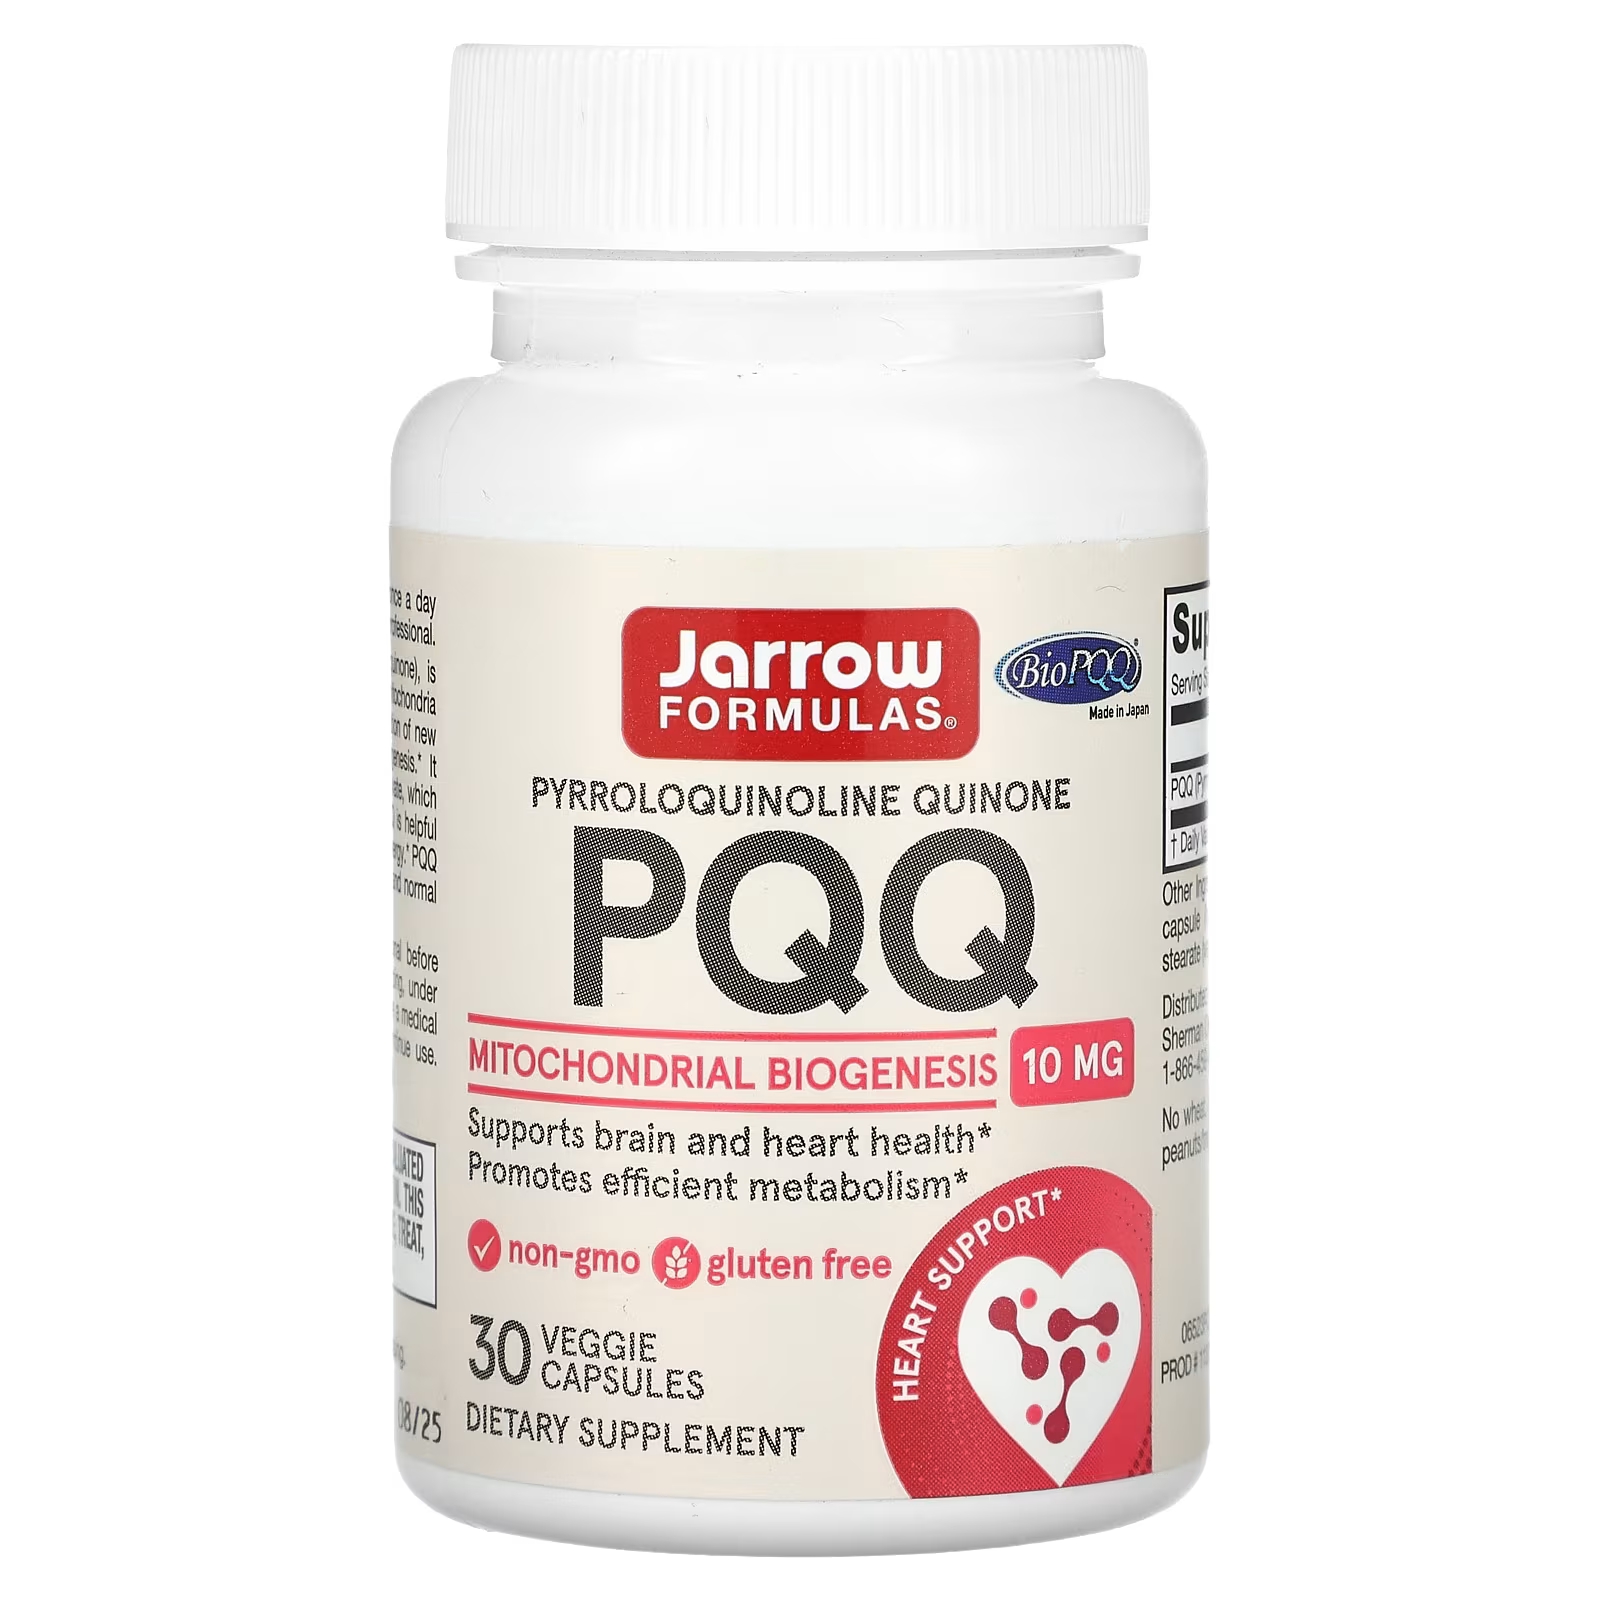 Пищевая добавка Jarrow Formulas PQQ для здоровья сердца, 10 мг jarrow formulas пирролохинолинхинон 20 мг 30 капсул